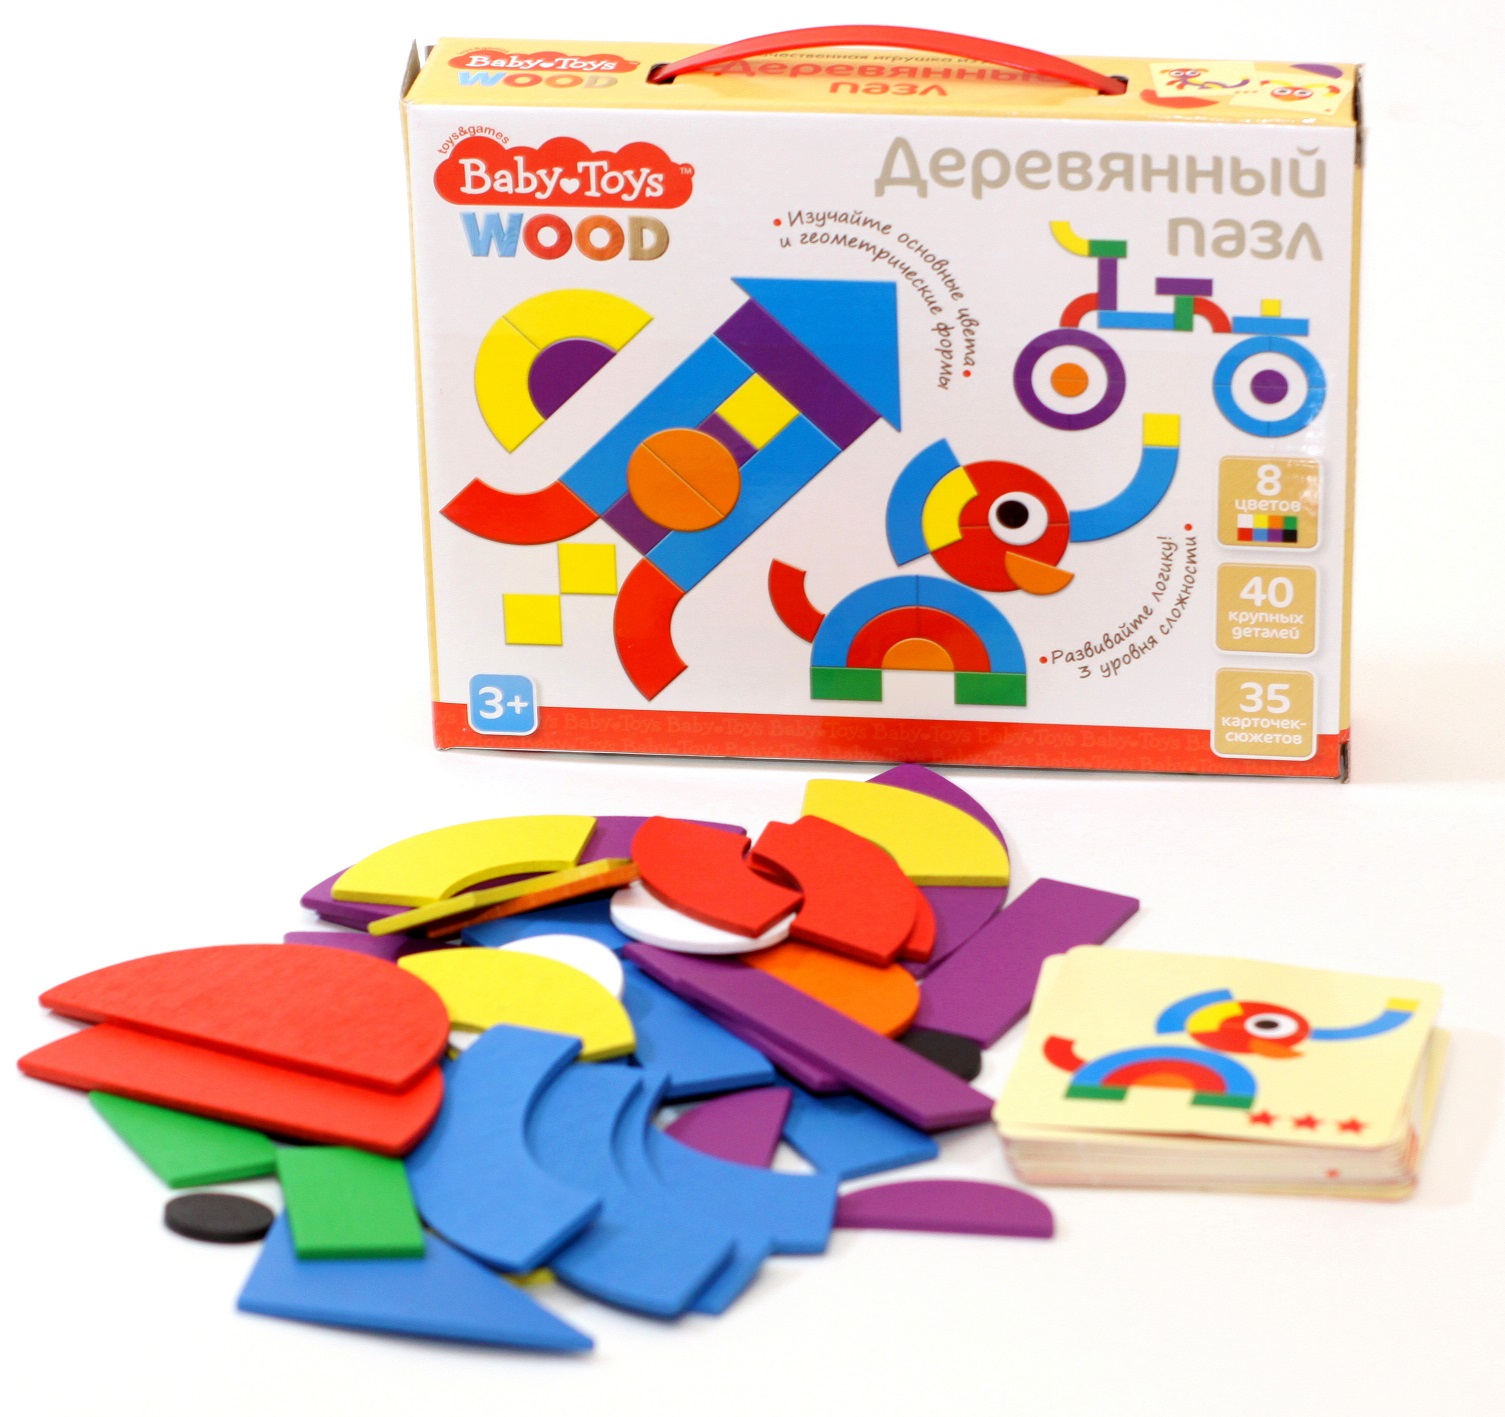 Пазл деревянный Baby Toys, 40 элементов  